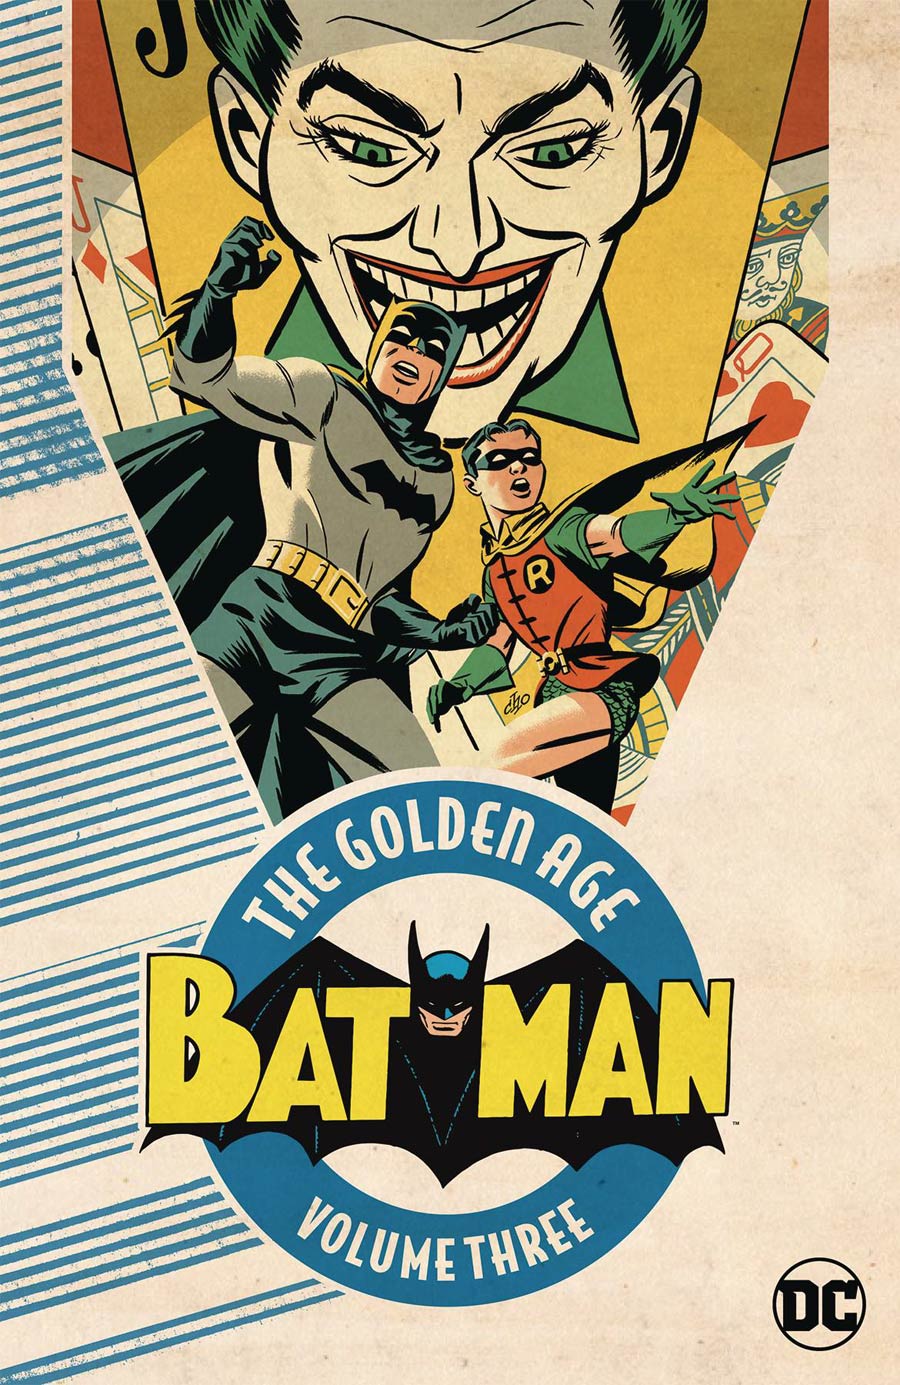 Batman The Golden Age Vol 3 TP